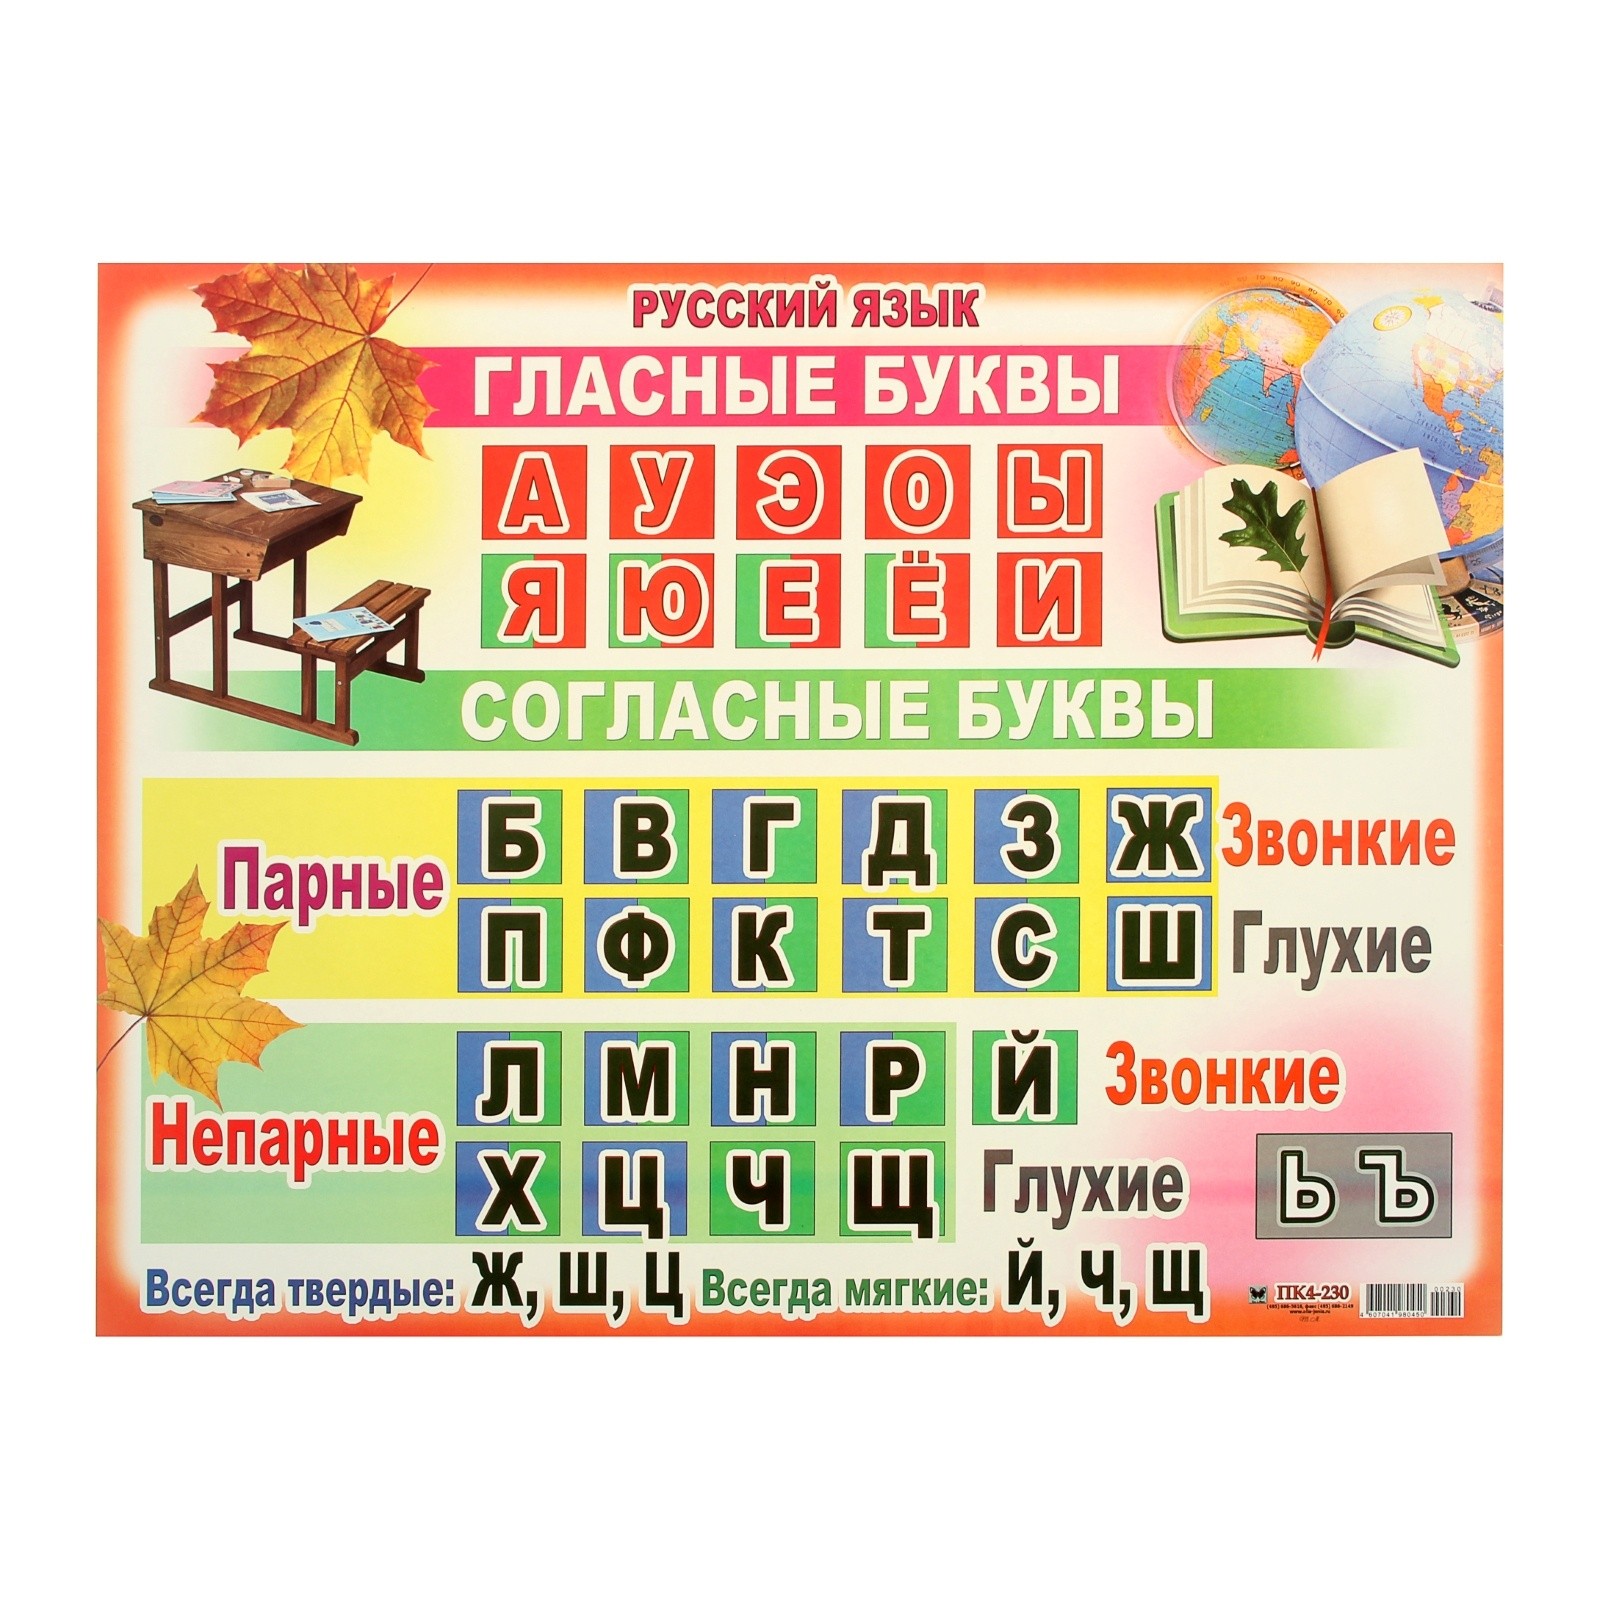 Таблица согласных и гласных букв русского языка